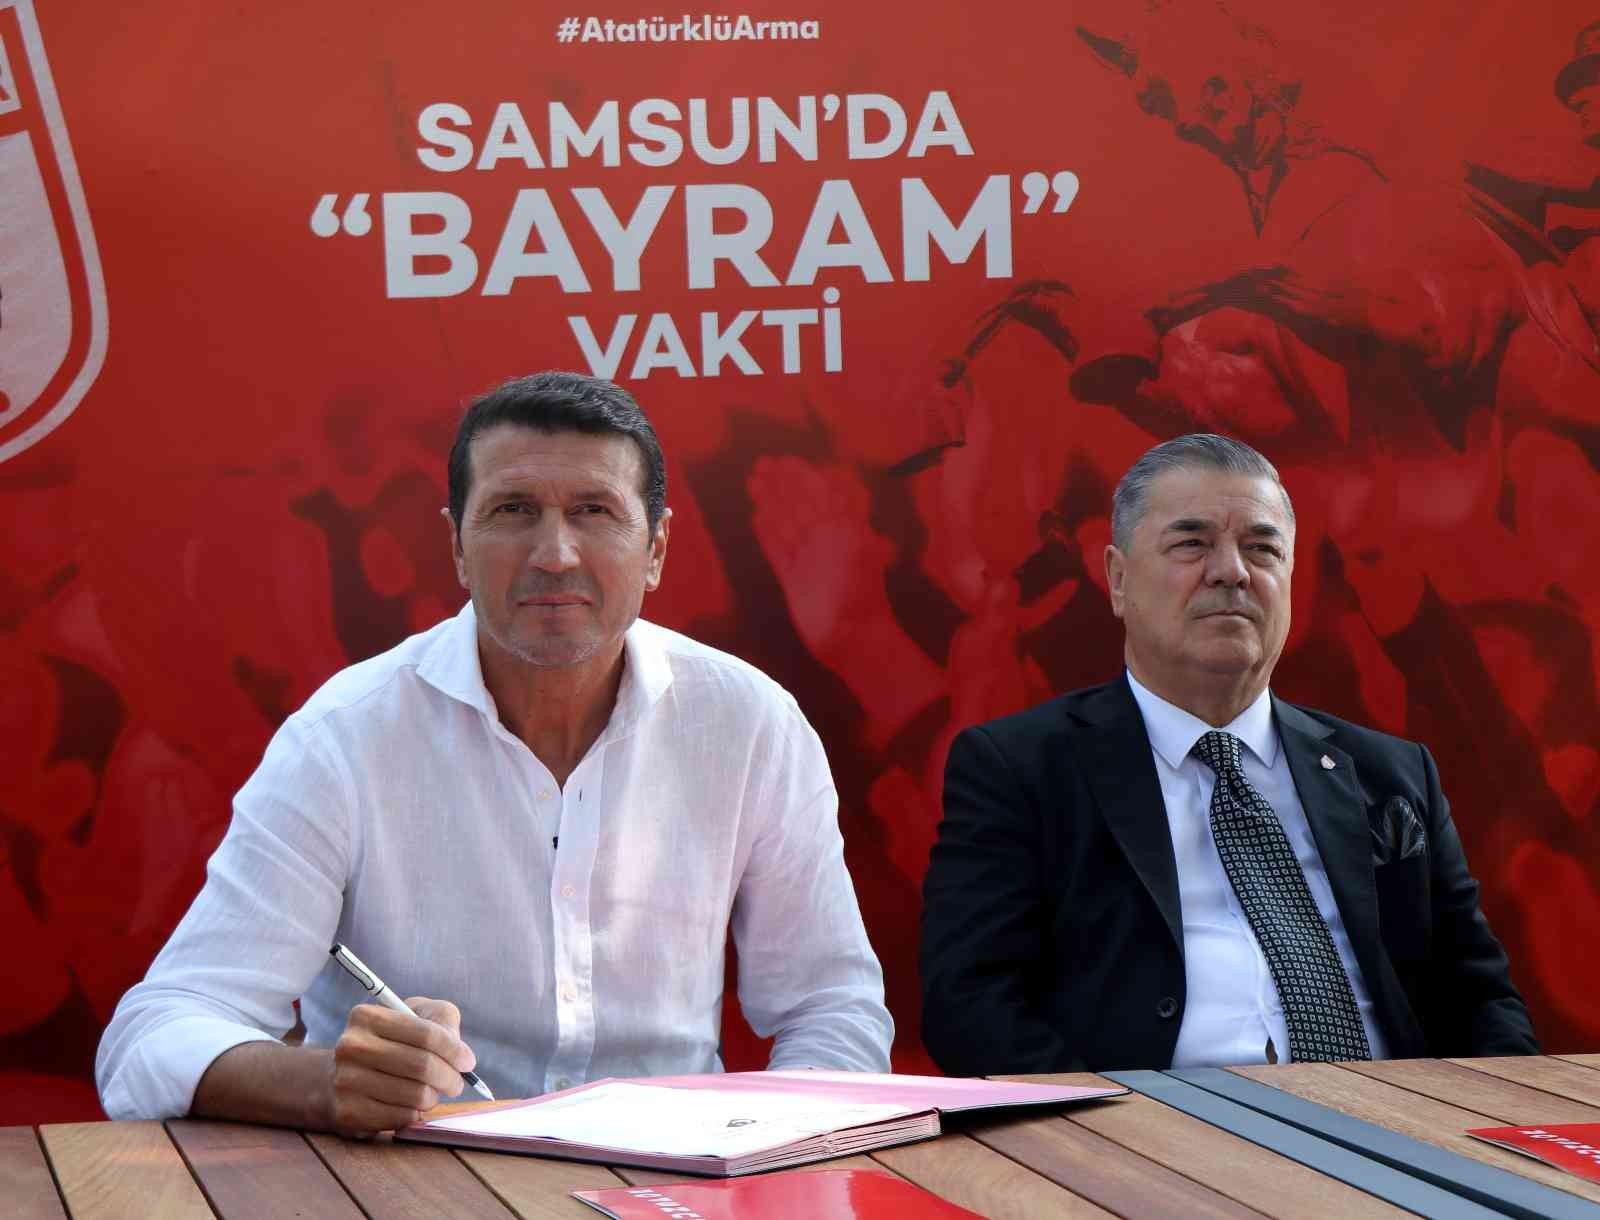 Samsunspor'da Bayram Bektaş dönemi başladı
